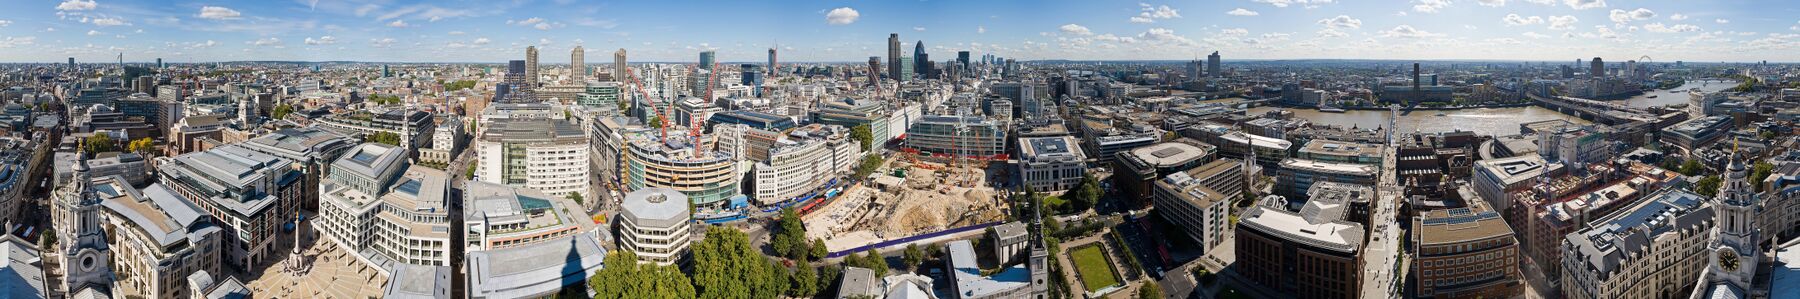 Uitzicht over hedendaags Londen vanaf de St. Paul's Cathedral